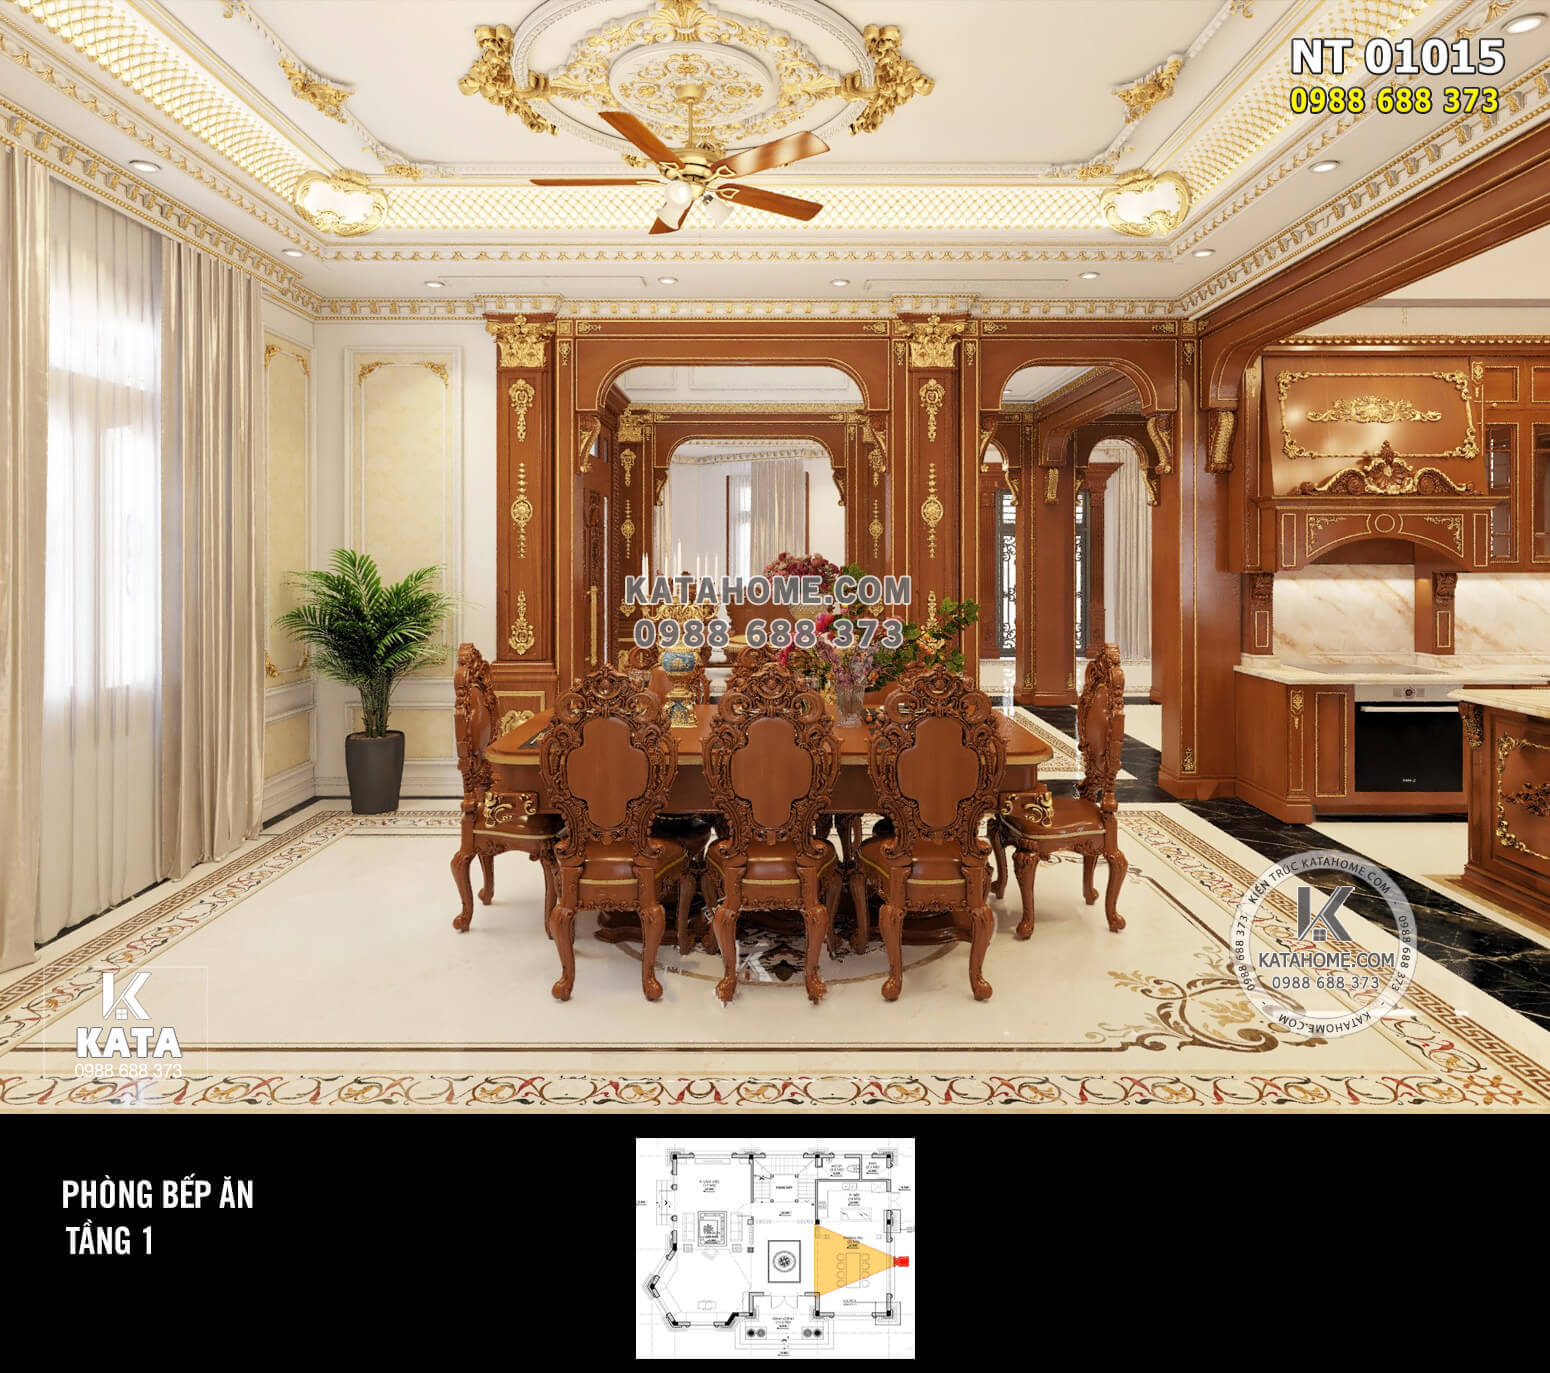 Toàn cảnh căn bếp tân cổ điển với phào chỉ dát vàng và đồ nội thất bằng gỗ gõ đỏ.